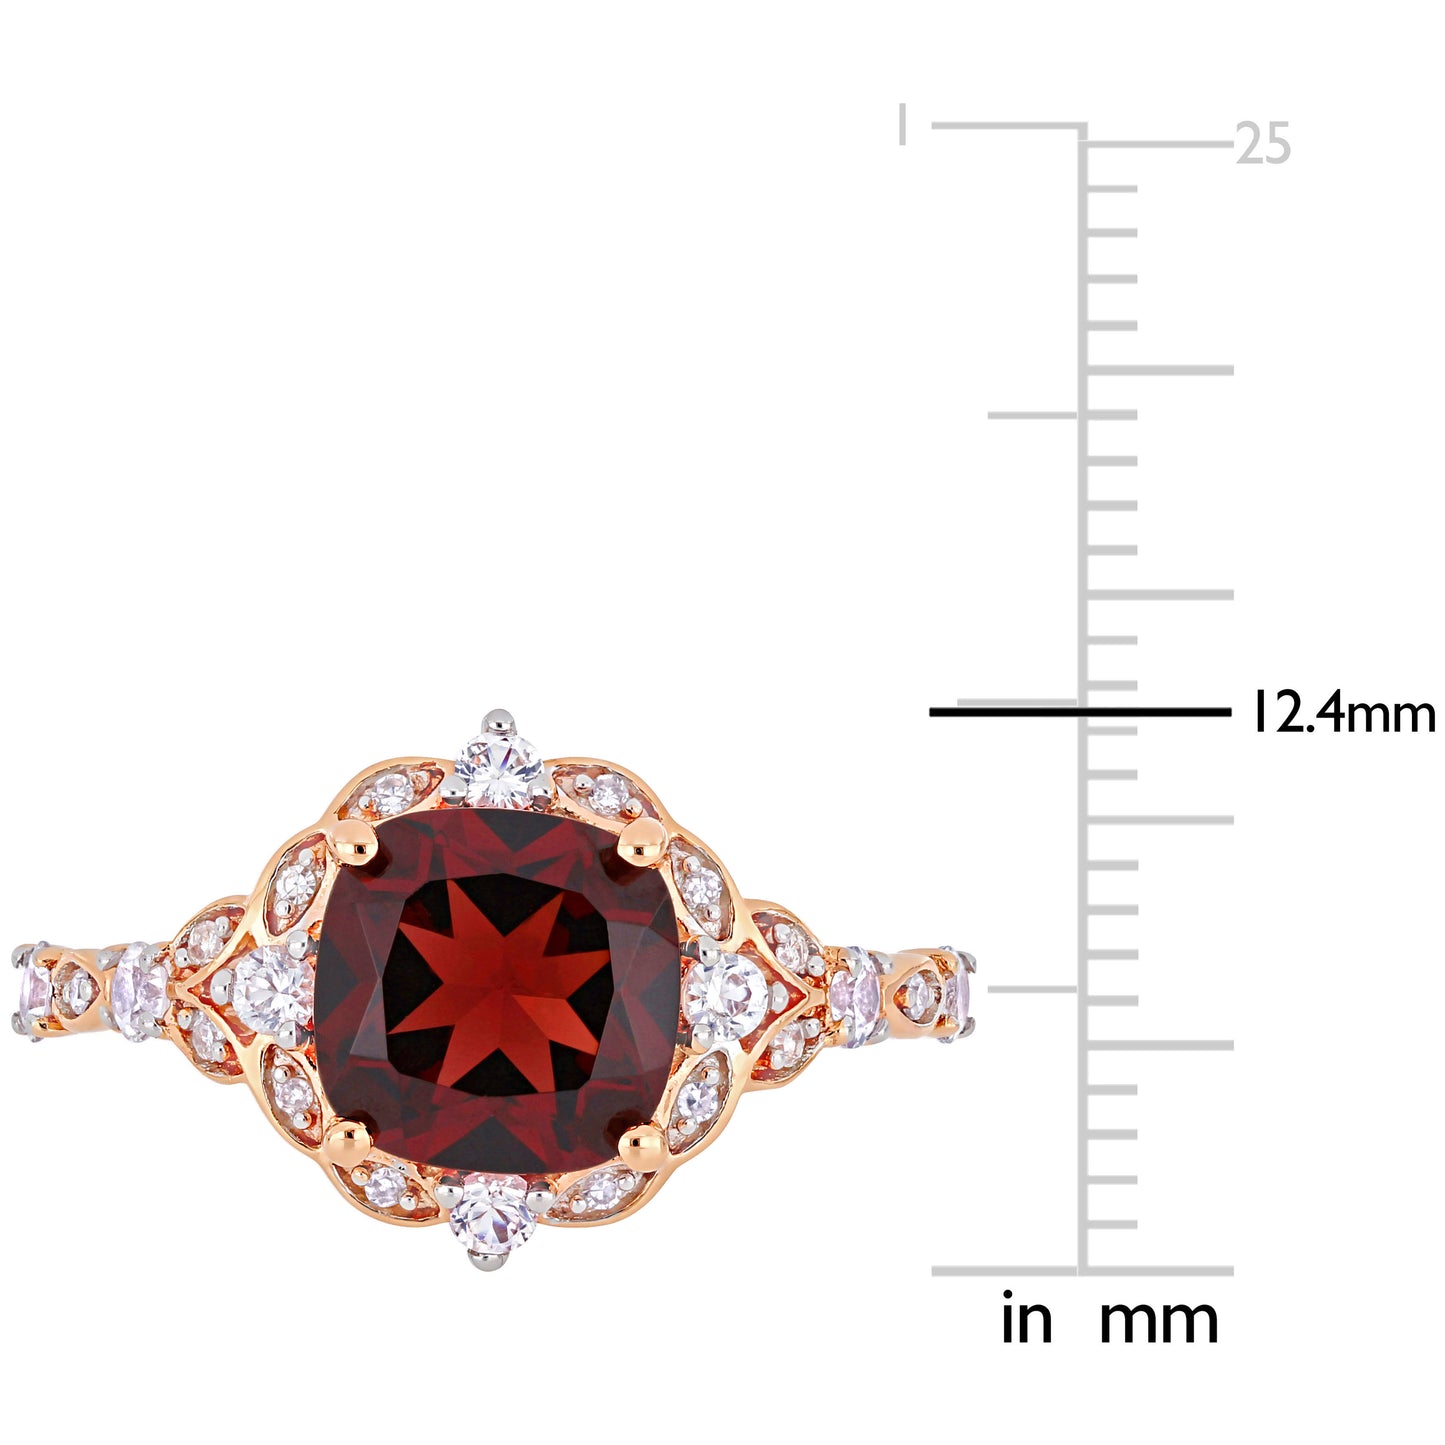 Garnet, White Sapphire & Diamond Ring in 14k Rose Gold